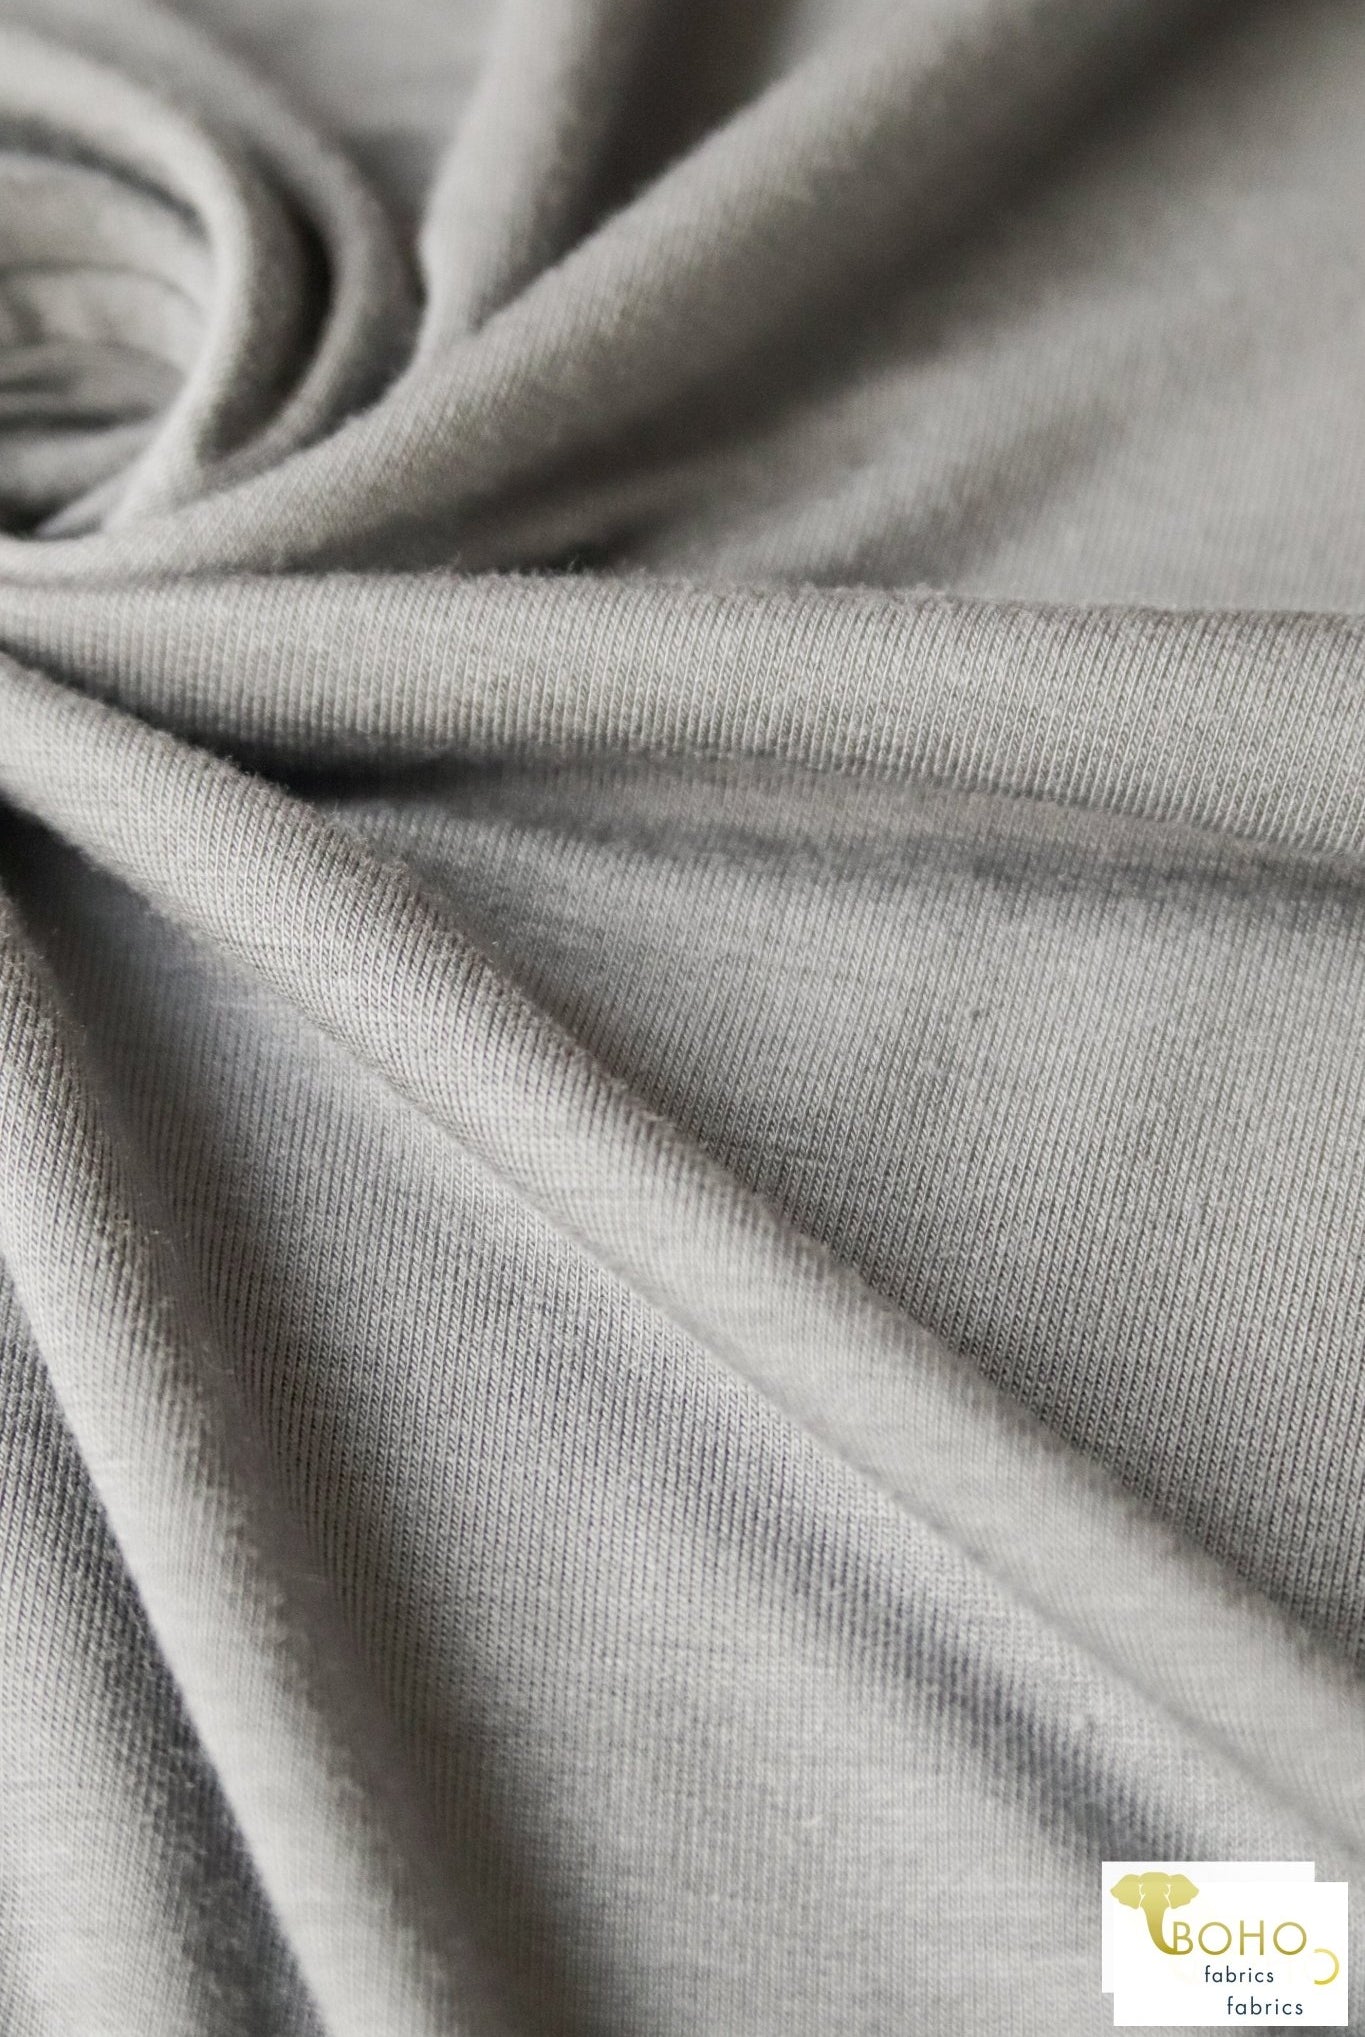 Winter Sky, Rayon Spandex Knit. RJS-210 - Boho Fabrics